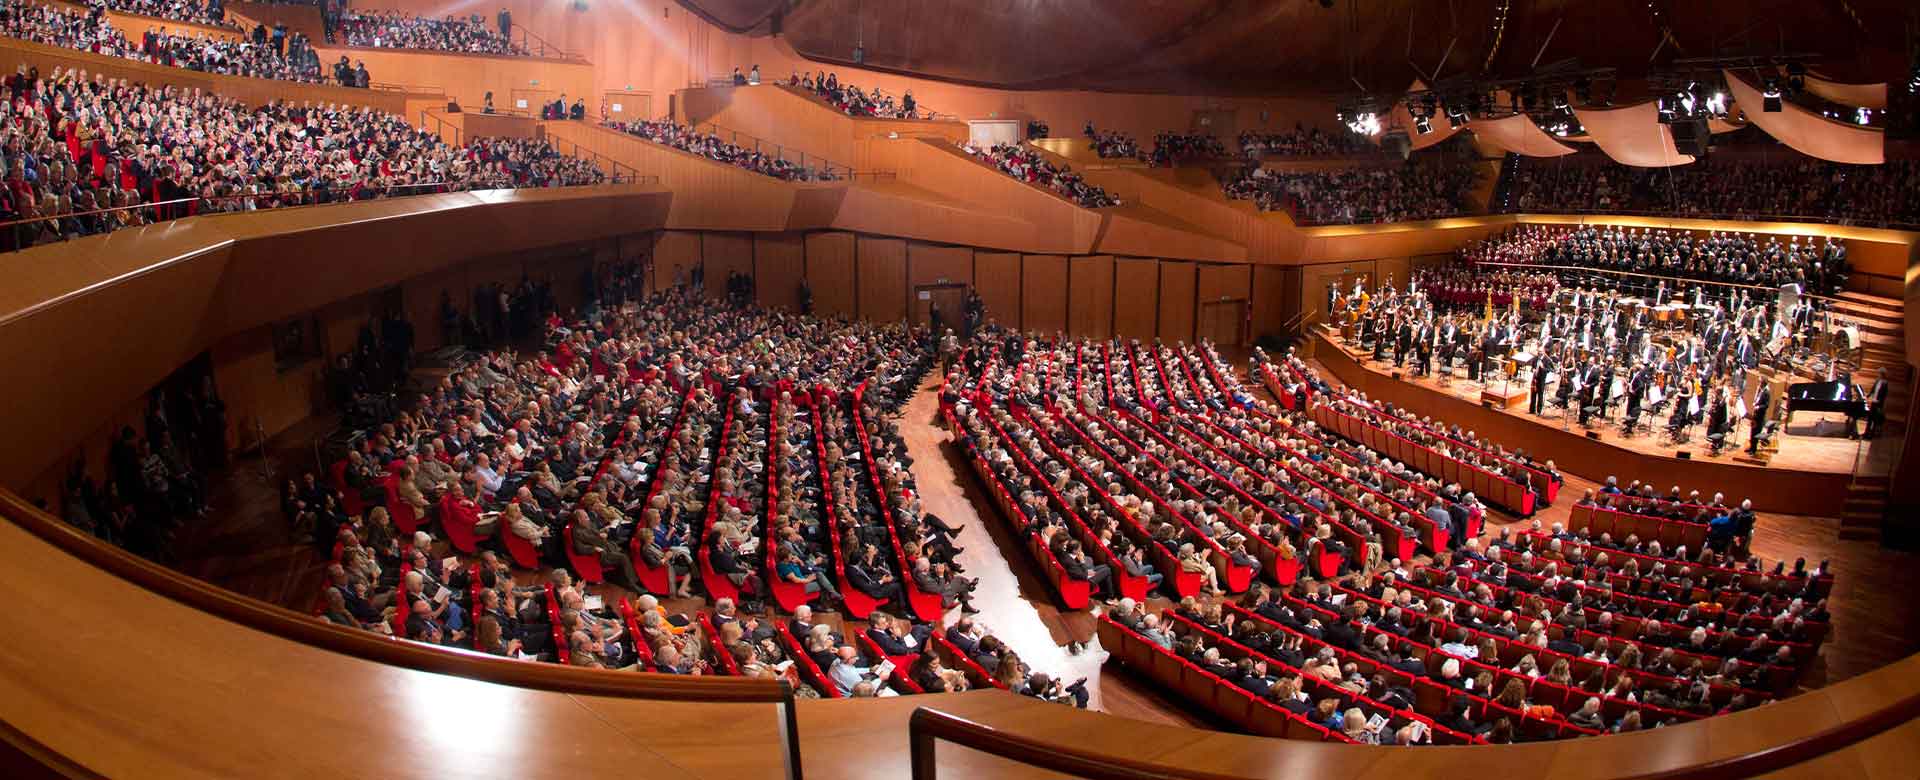 L'Auditorium Parco della Musica